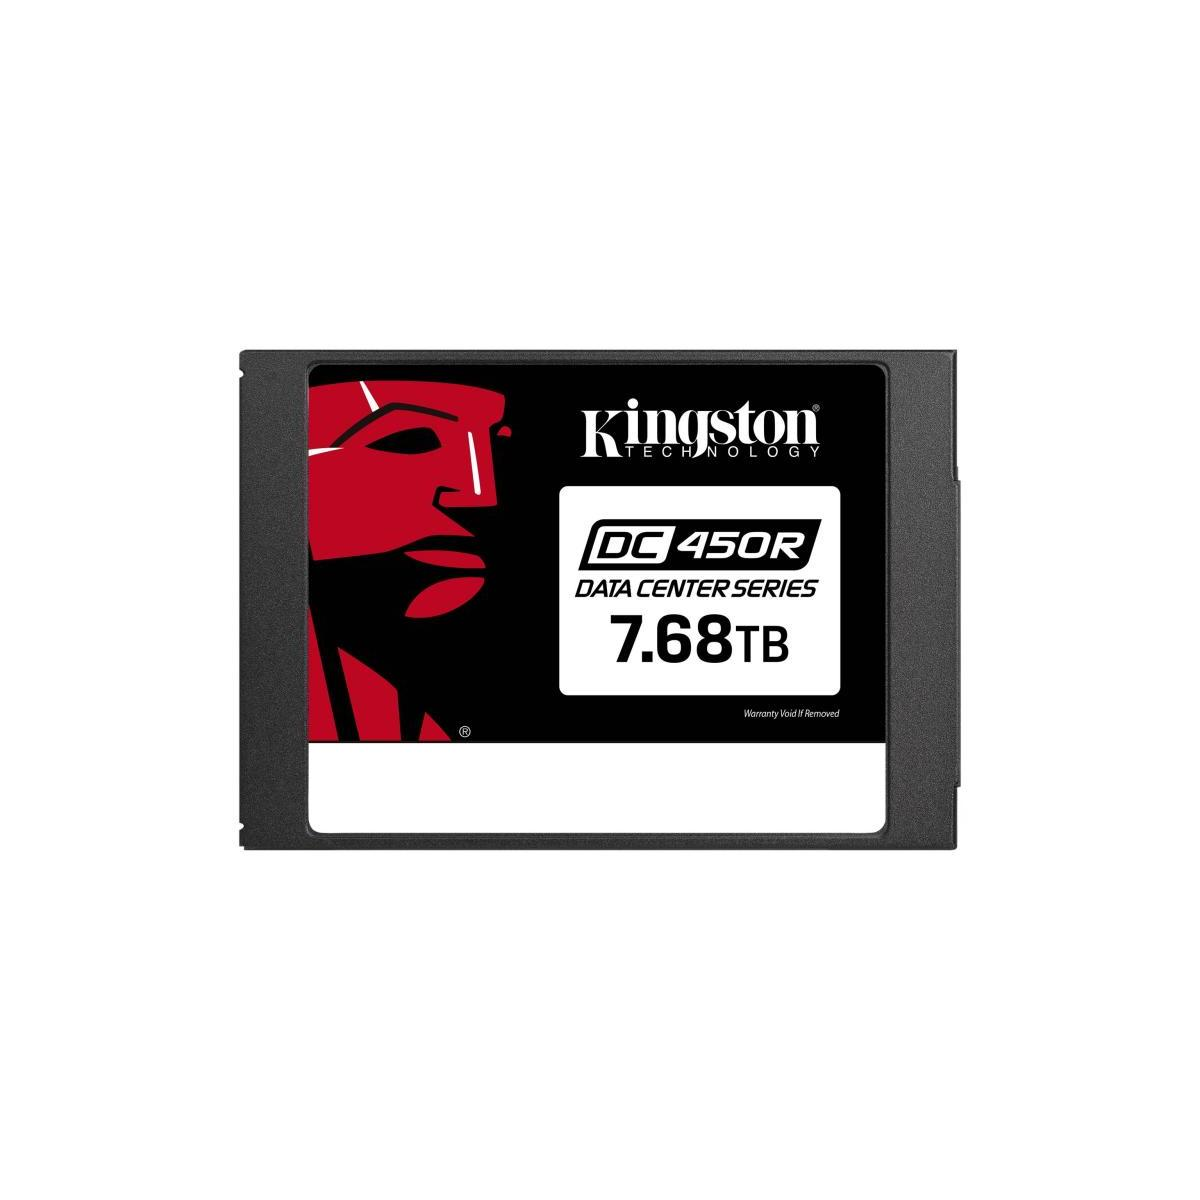 TB, Kingston Data - Center SSD, 6Gb/s, 7.68TB DC450R 2,5 intern (SSD Zoll, 7,68 SATA intern, KINGSTON verschlüsselt),